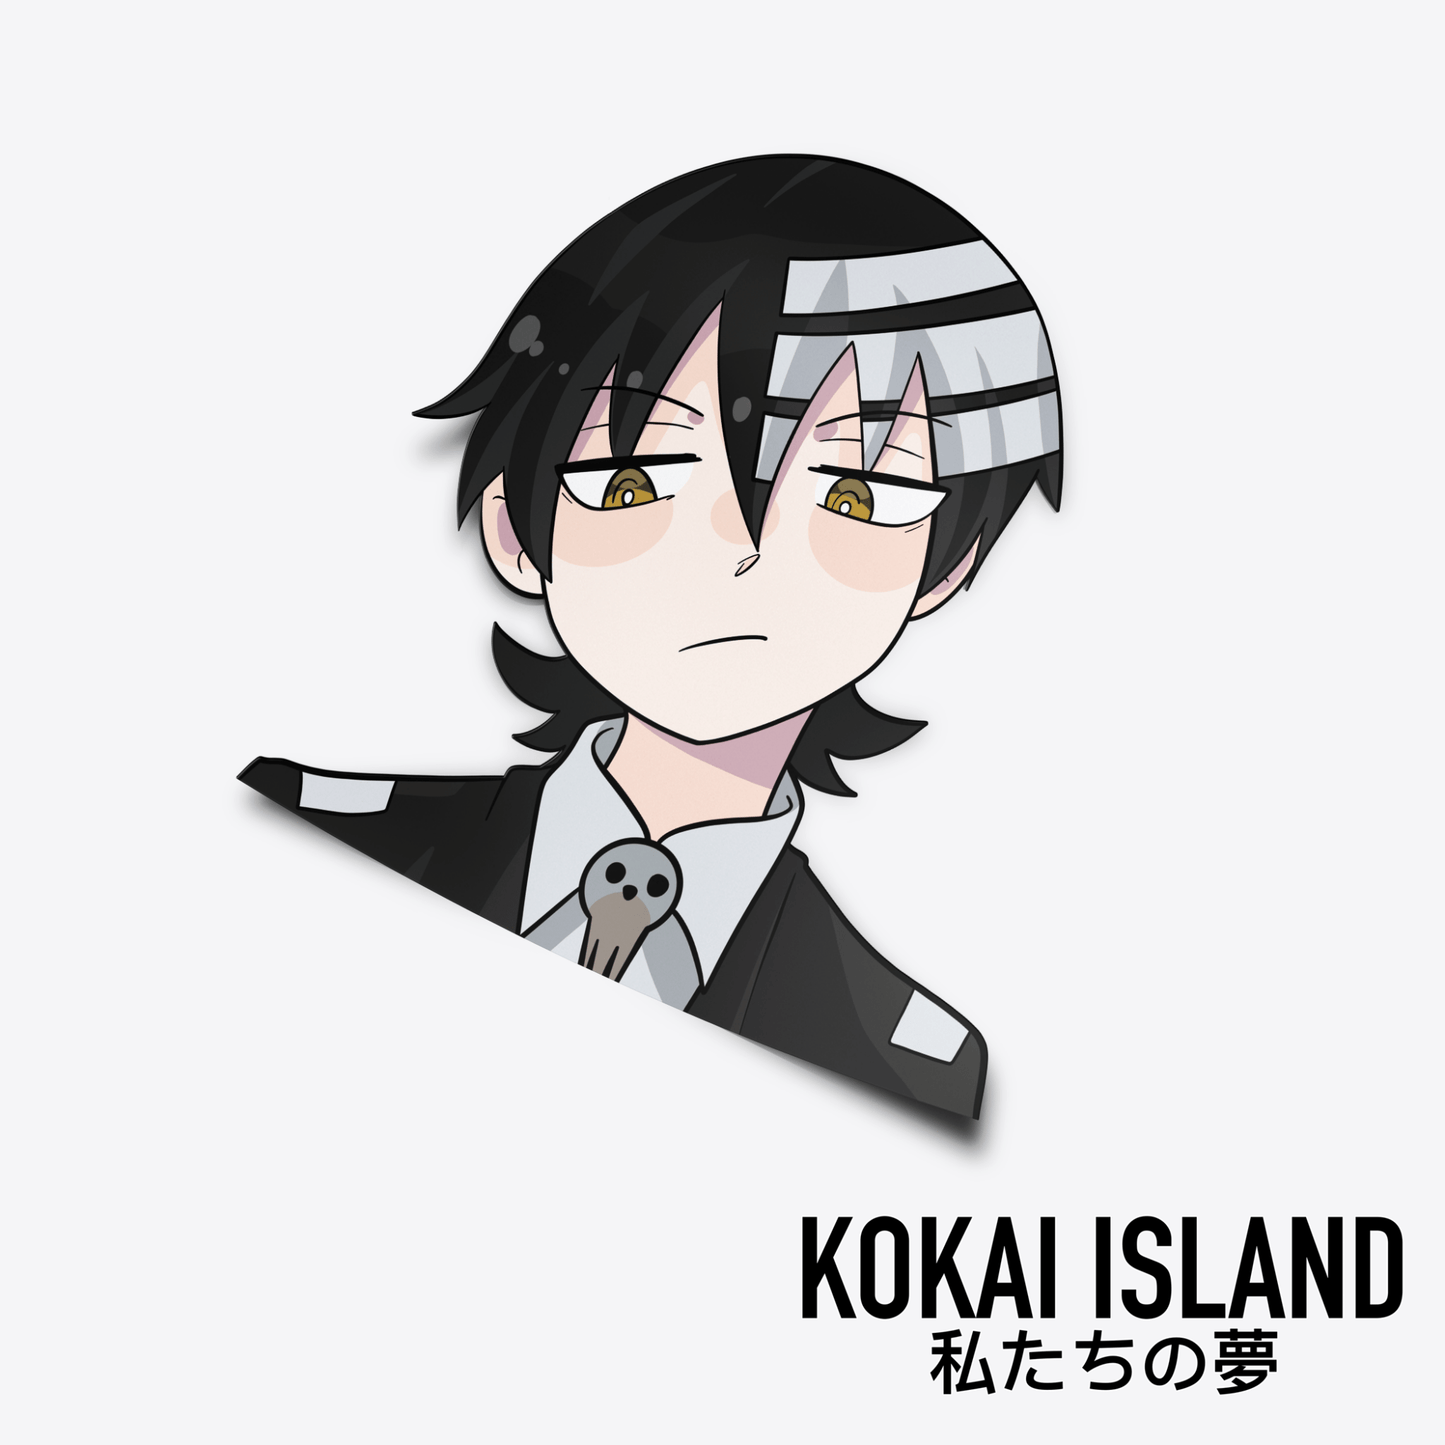 The Kid DecalDecalKokai Island